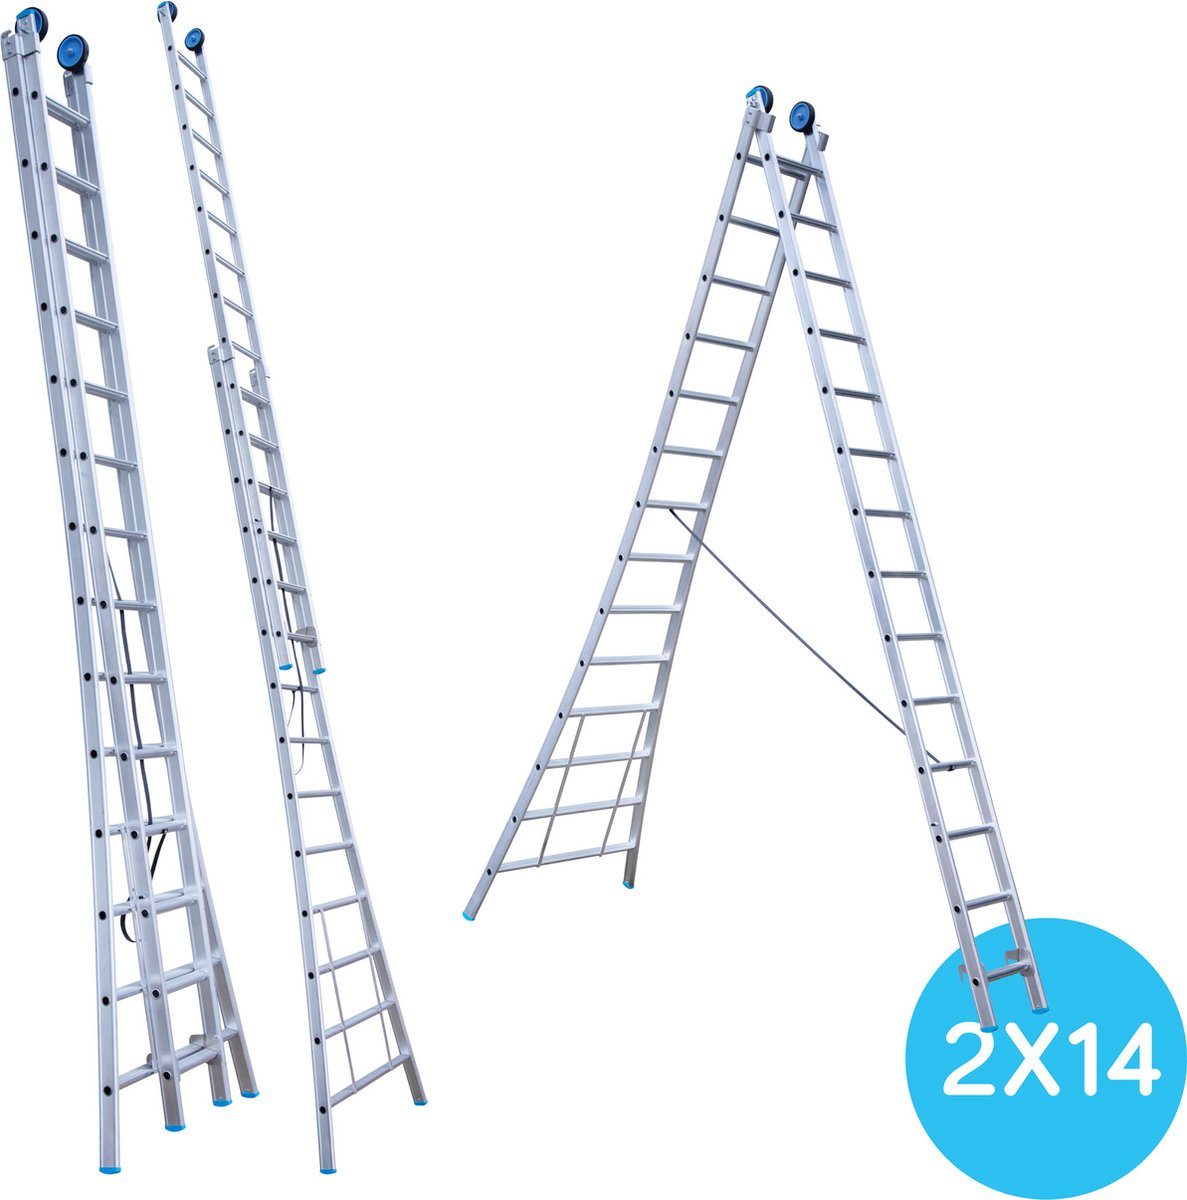 Eurostairs Reform ladder dubbel uitgebogen 2x14 sporten + gevelrollen